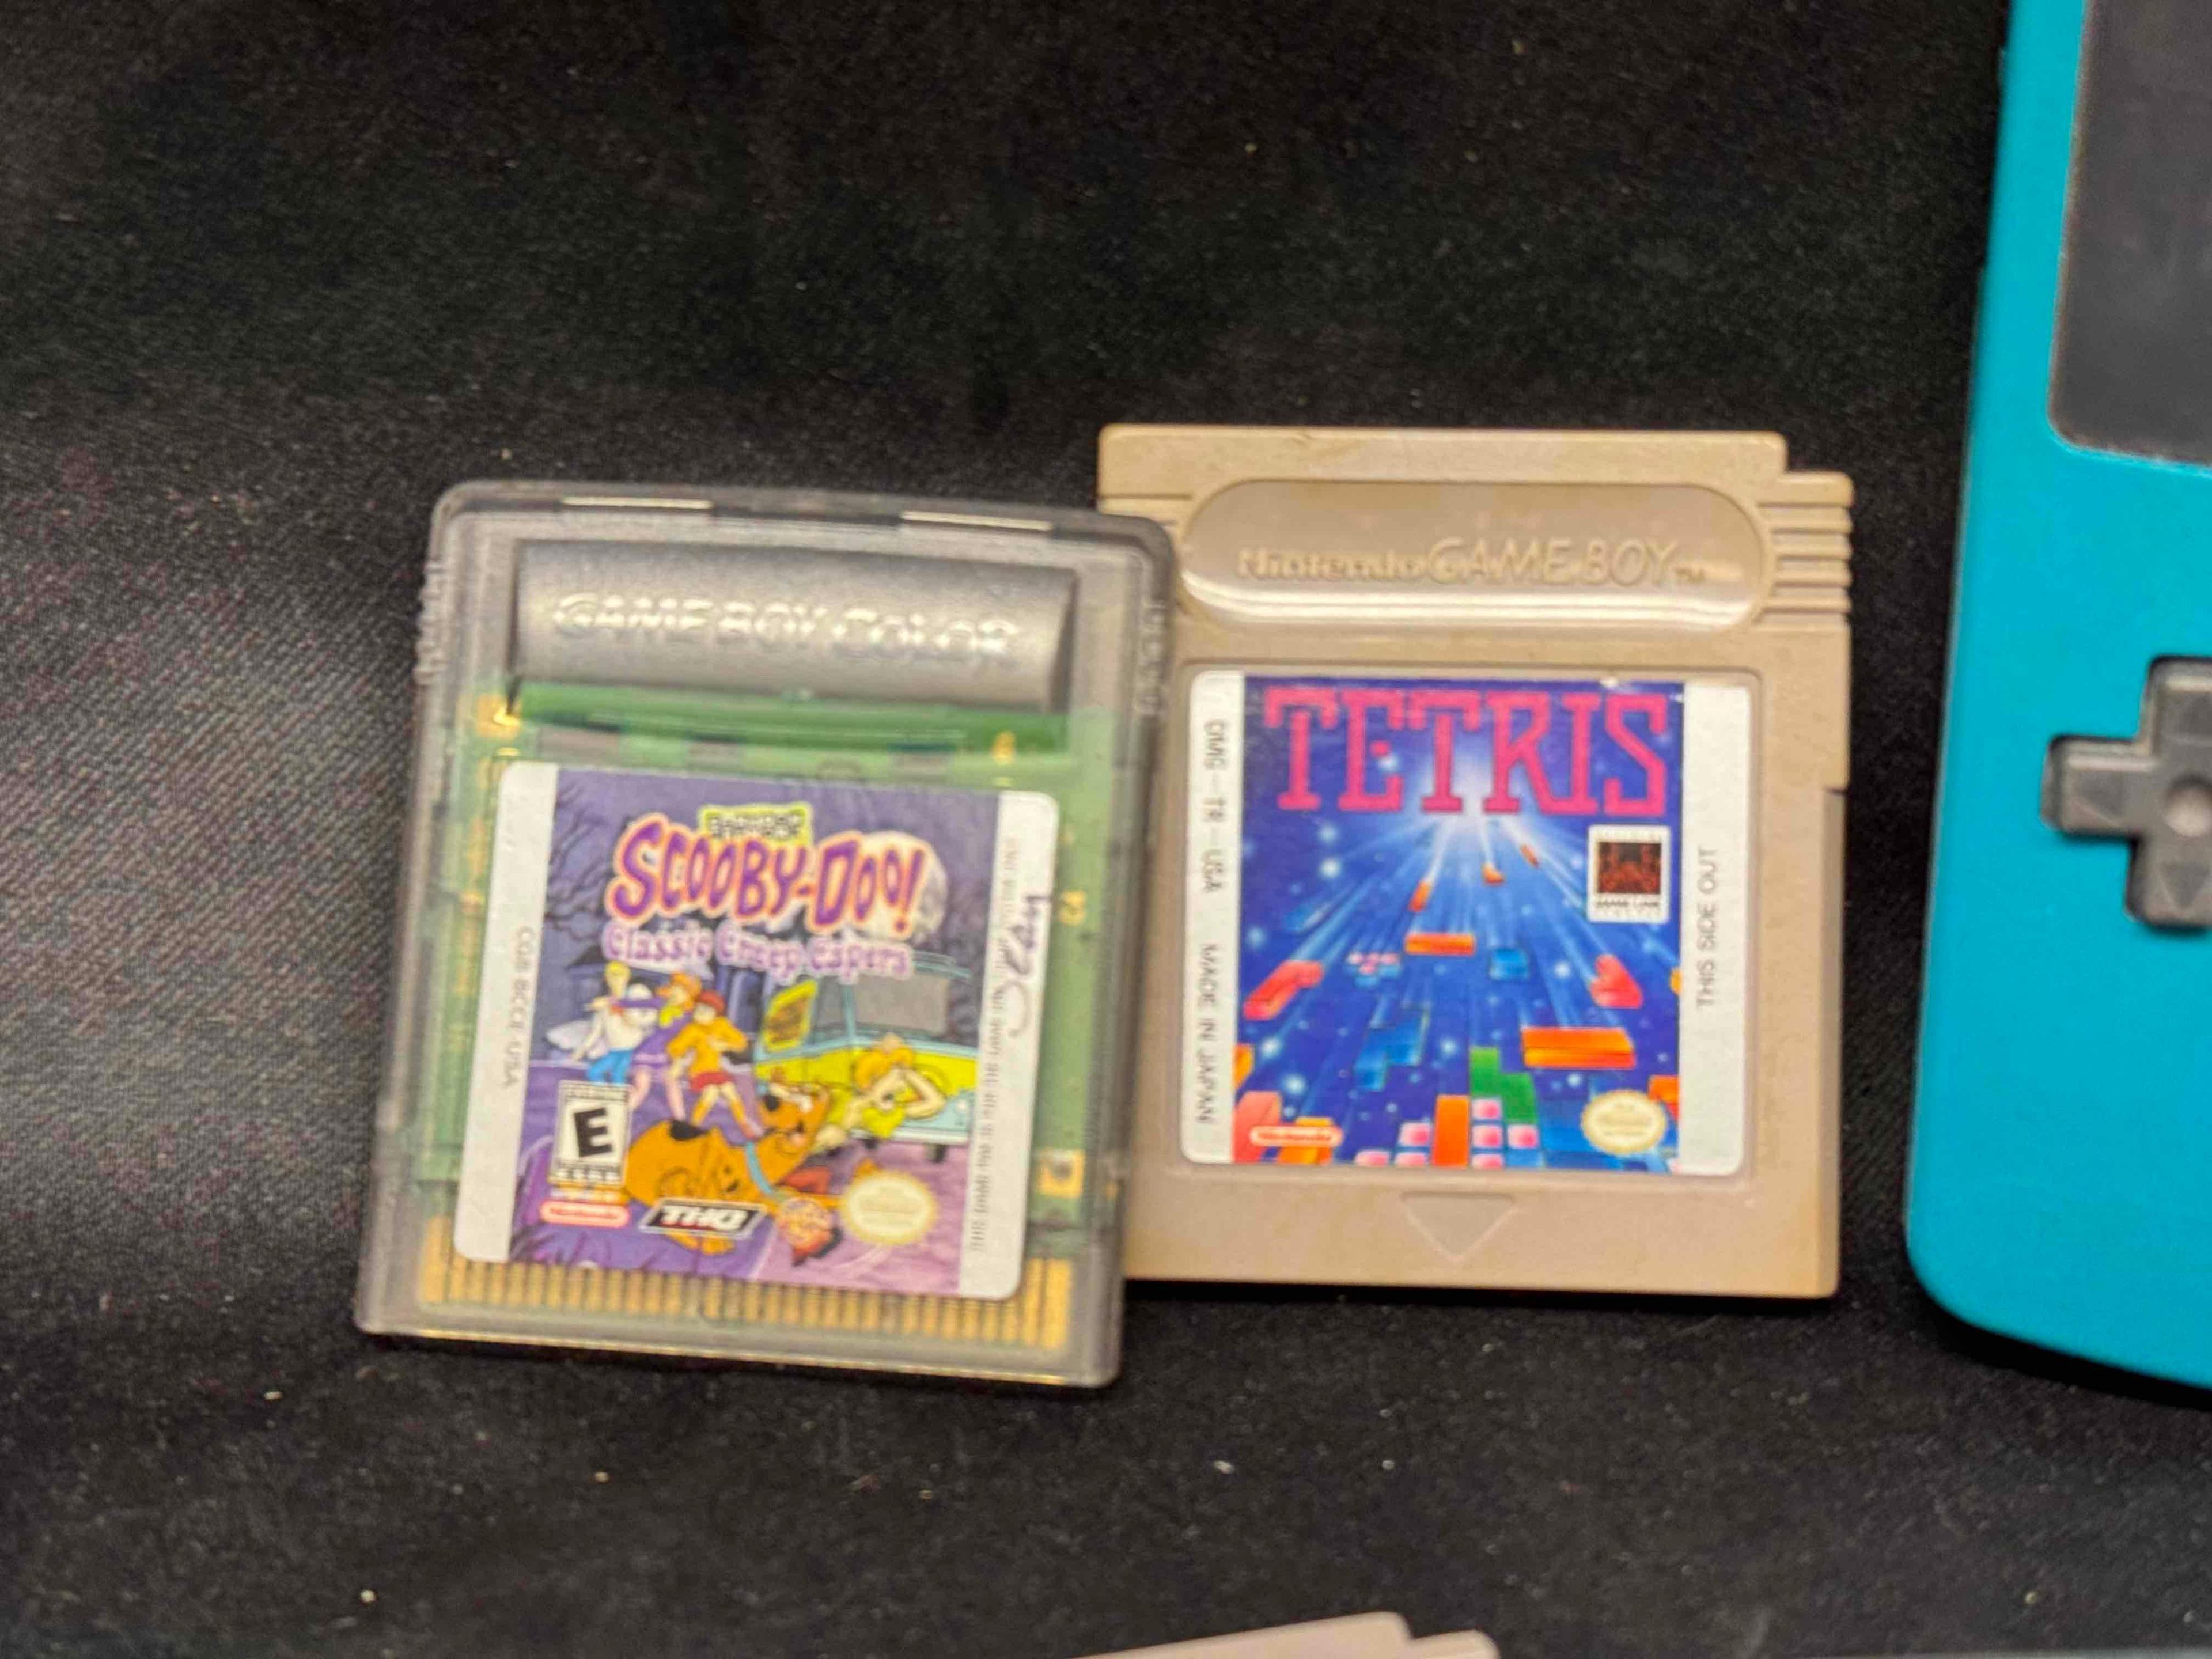 Nintendo Gameboy Color with 8 Games. Mario Brothers, Megaman, Tony Hawk, Scooby Doo more